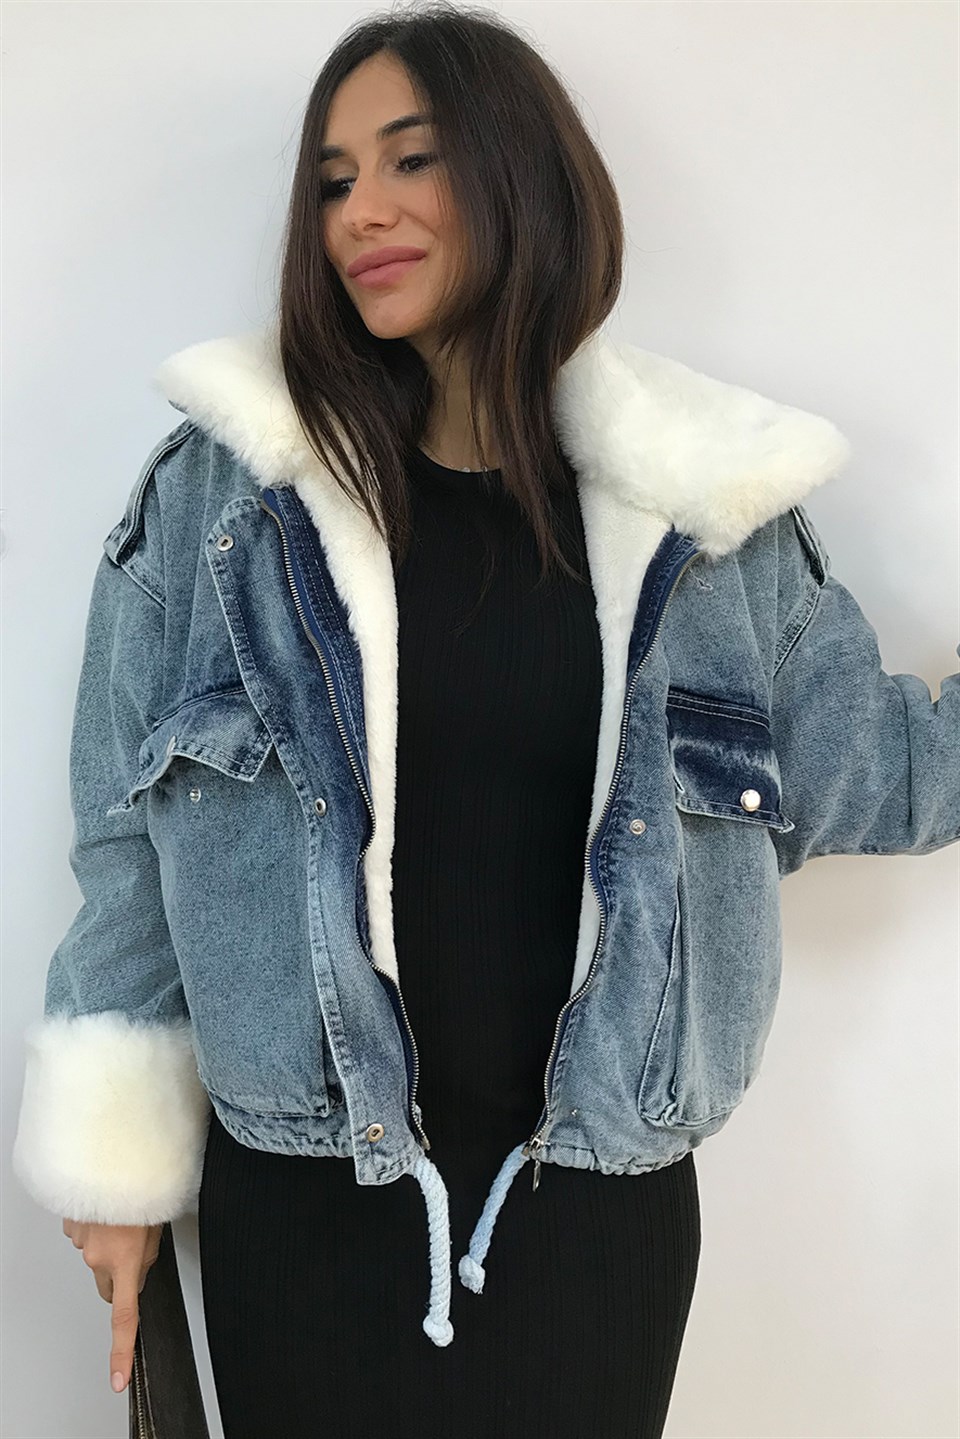 4SF Kadın Ceket ve Montları -Online Alışveriş Kolay iade